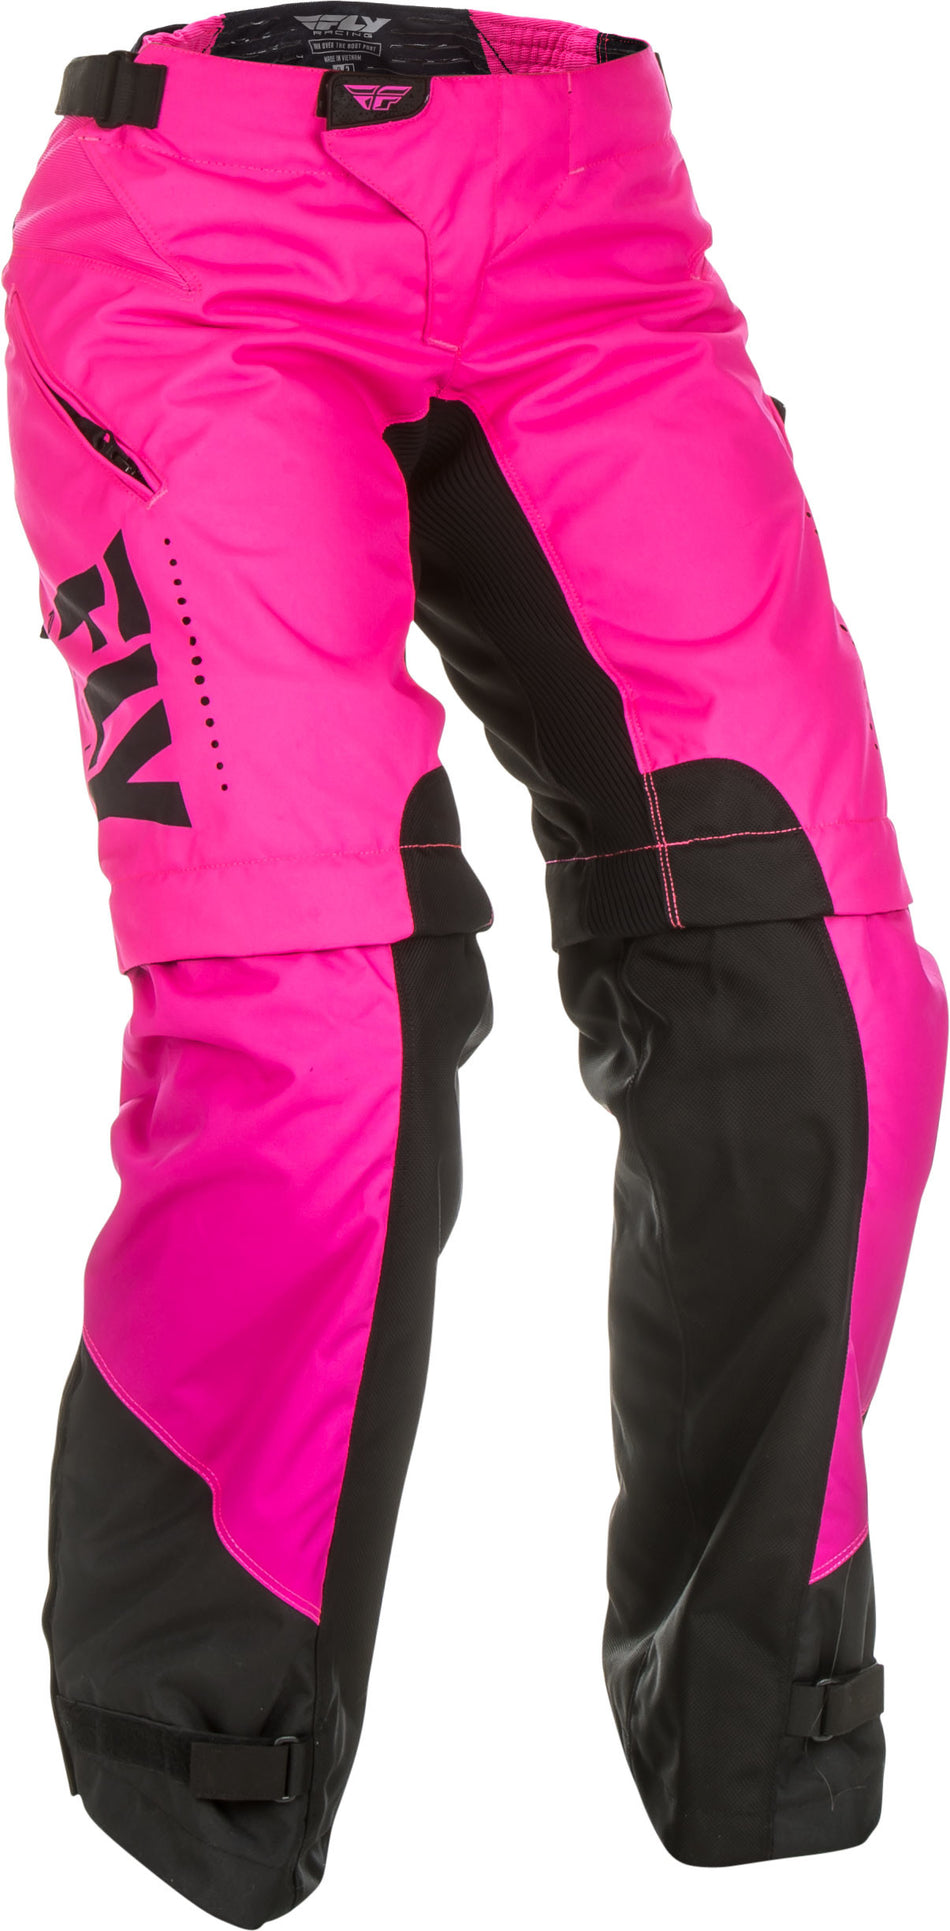 FLY RACING Women's Over Boot Pants Neon Pink/Black Sz 05/06 372-65806